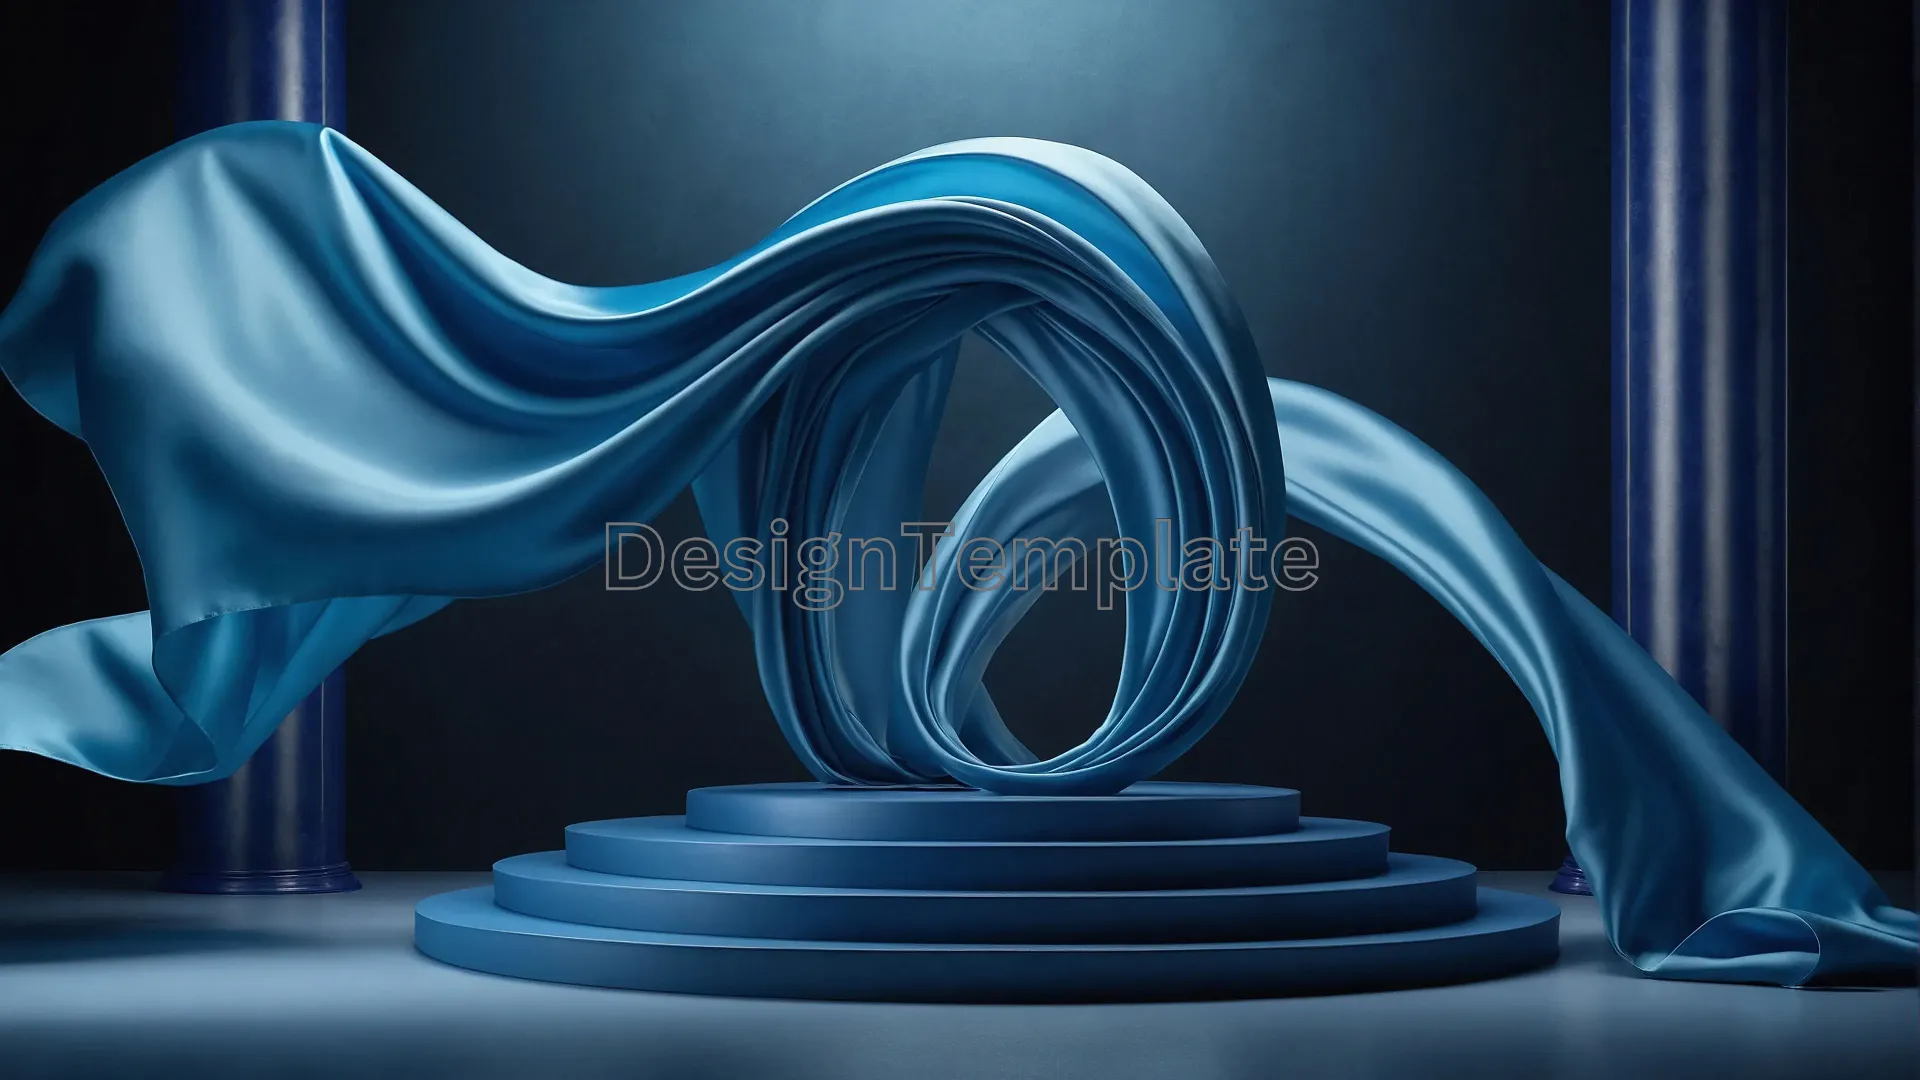 Silk Fabric Enveloping 3D Podium Image